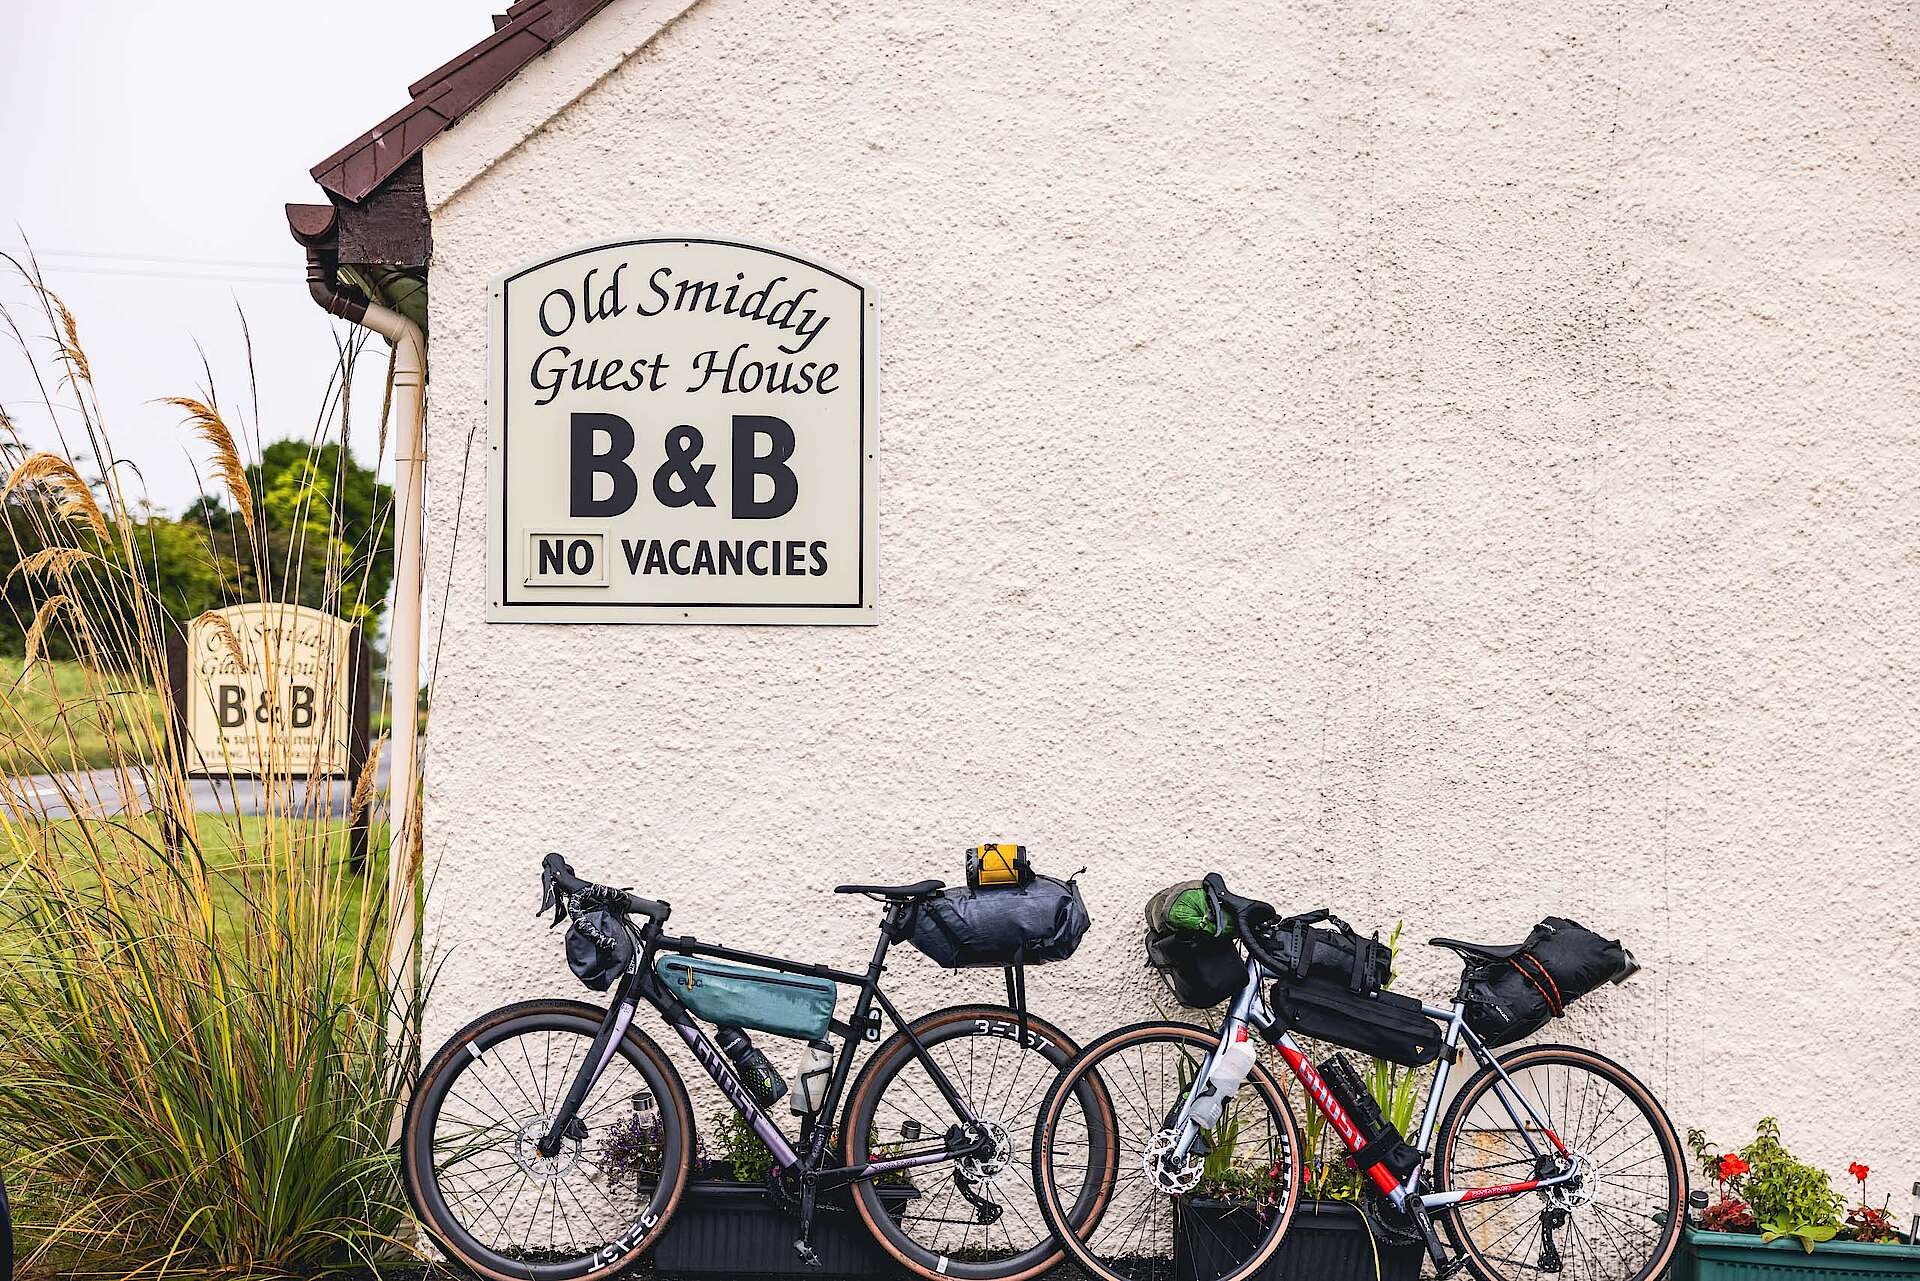 Das "Old Smiddys", ein BnB in Schottland - eine absolute Empfehlung für den Bikepackingtrip an der North Coast 500